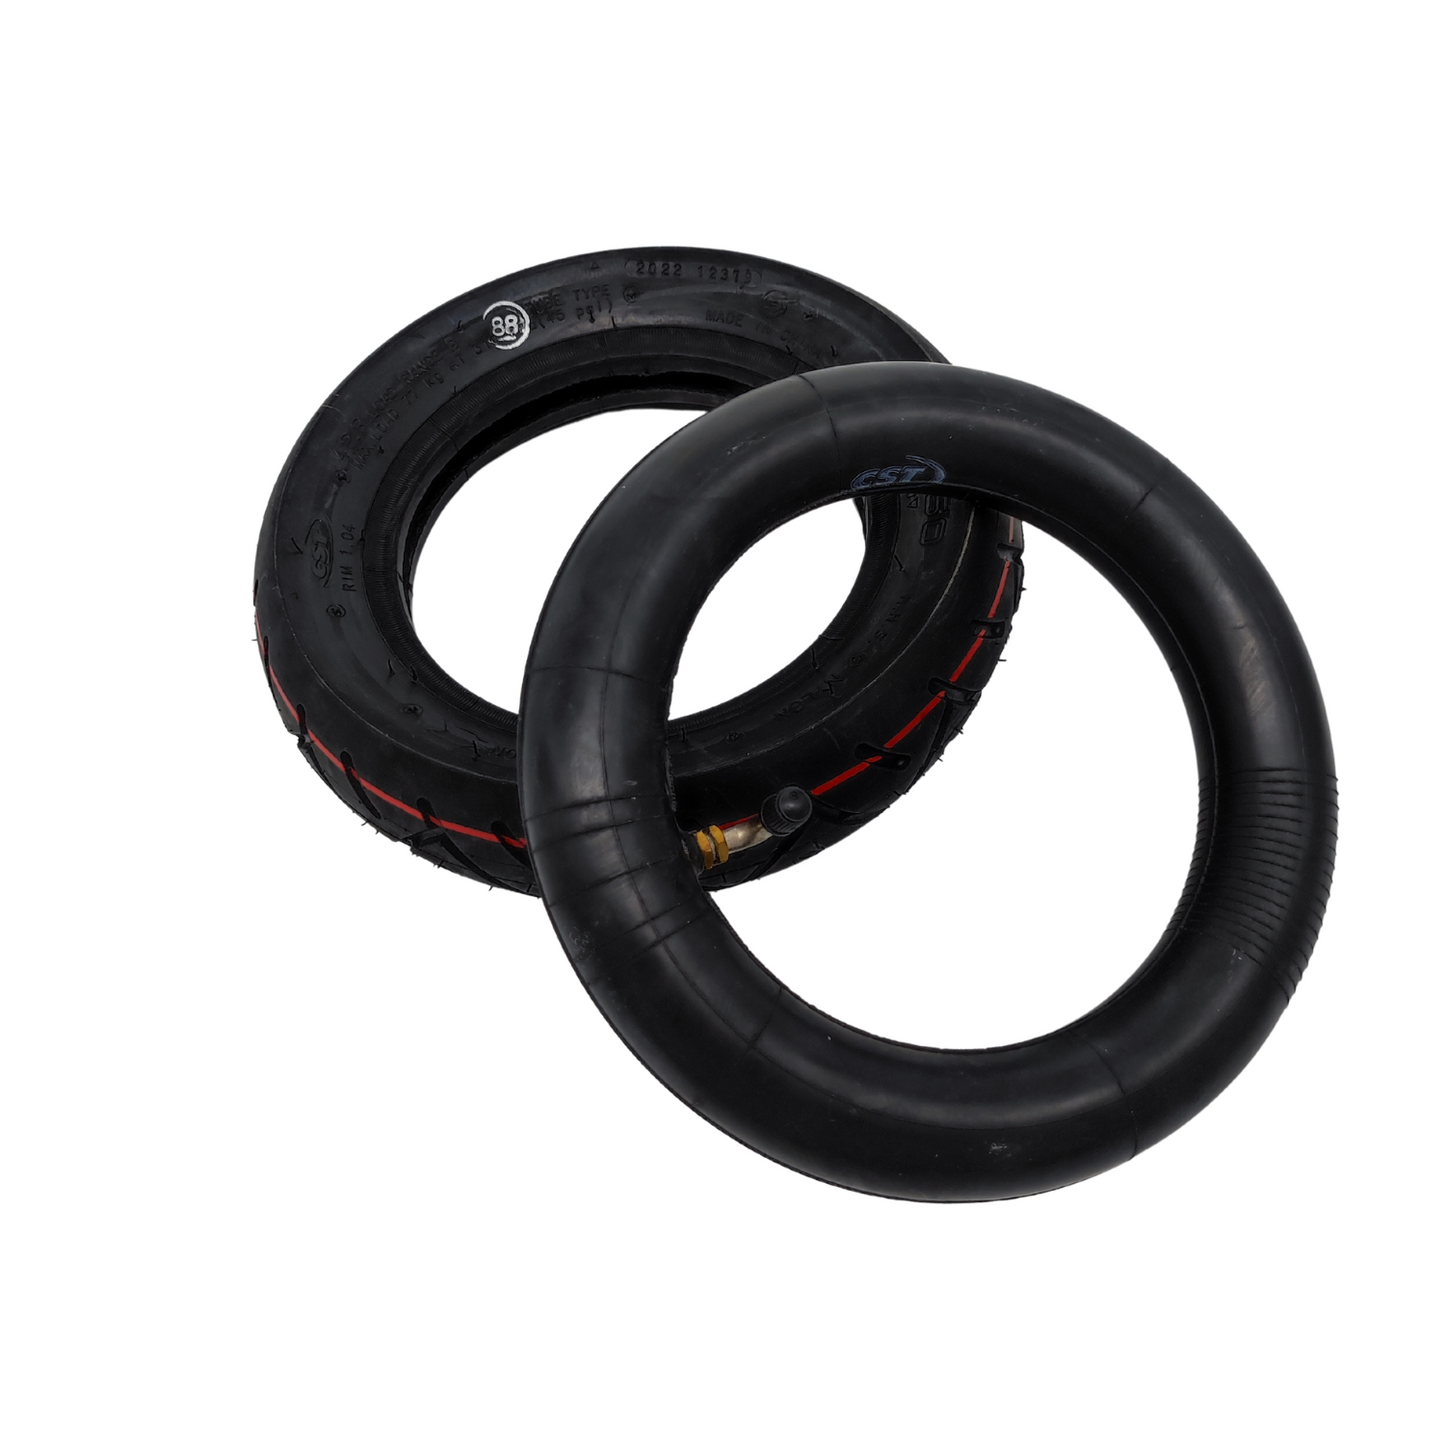 CST 10x2,5 Zoll  Reifen mit Schlauch Set Hochwertige Qualität für eScooter Fahrrad Kinderwagen